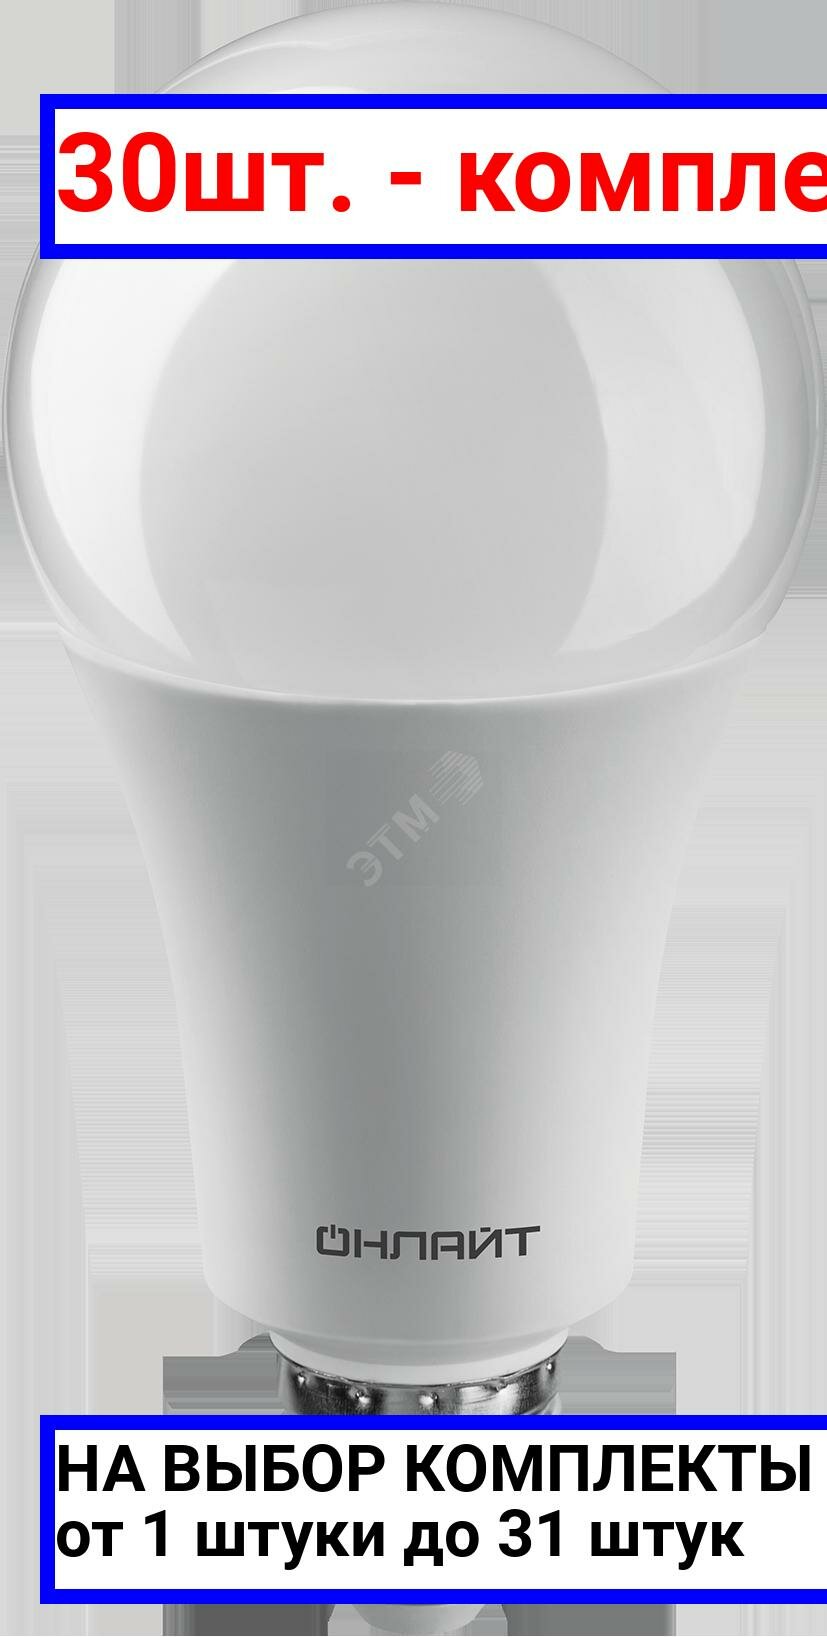 30шт. - Лампа светодиодная LED 25вт Е27 белый / онлайт; арт. 61954 OLL-A60; оригинал / - комплект 30шт